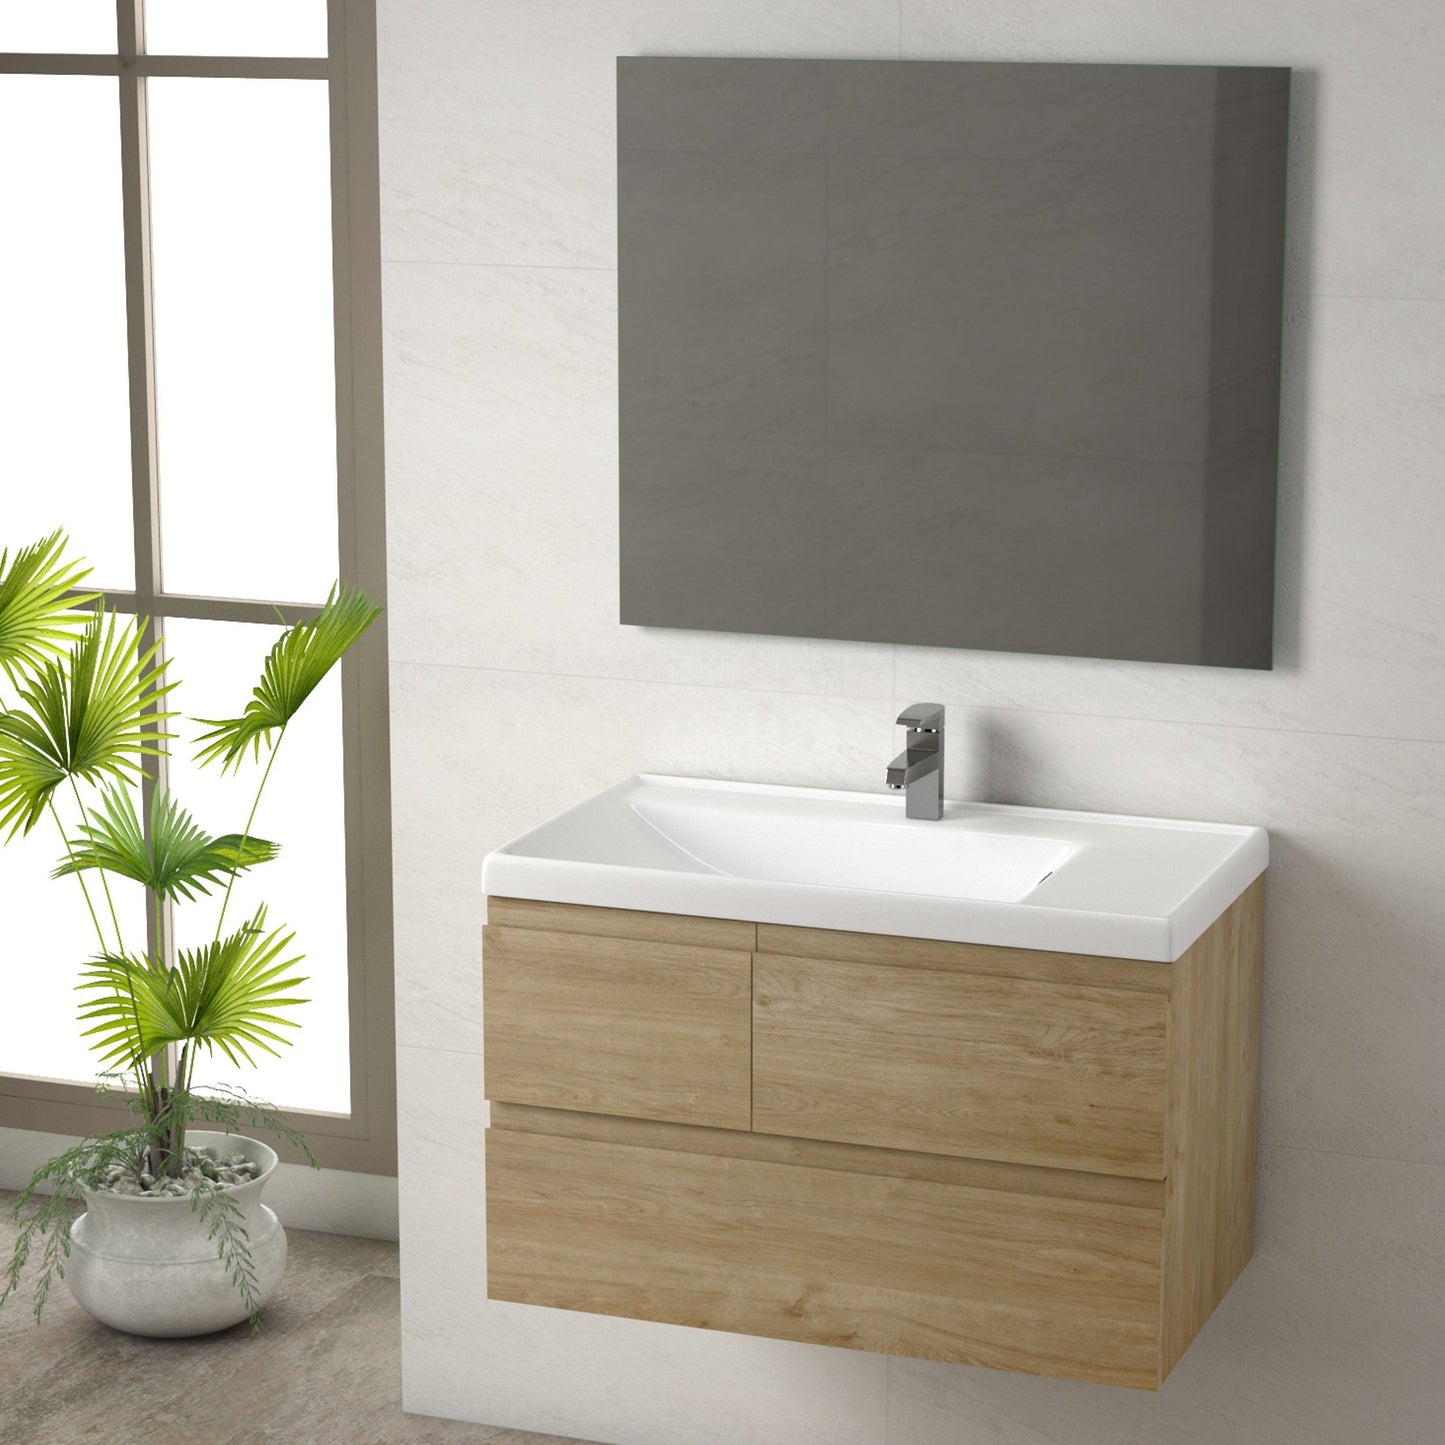 Eviva Roxy 32” Natural Oak Vanity with Porcelain sink - Luxe Bathroom Vanities Luxury Bathroom Fixtures Bathroom Furniture